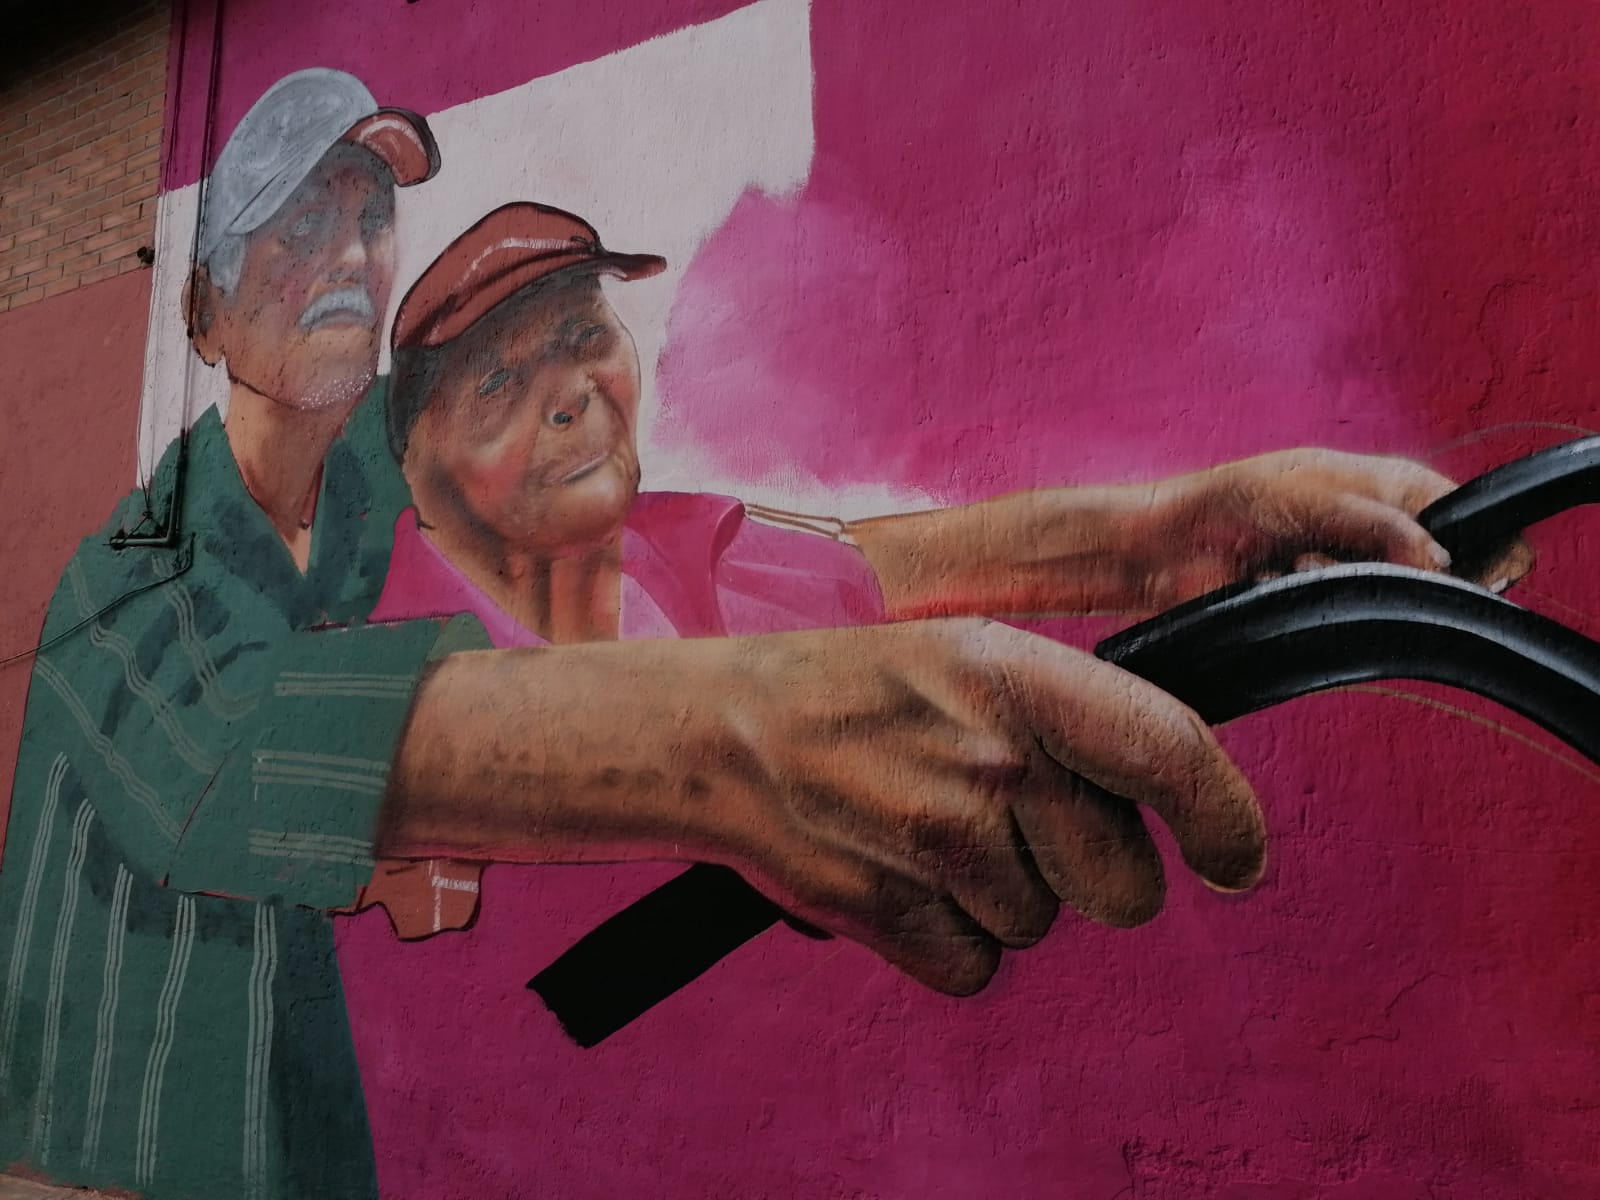 Historias de habitantes de Iztapalapa inspiran a artista urbano y las plasma en murales